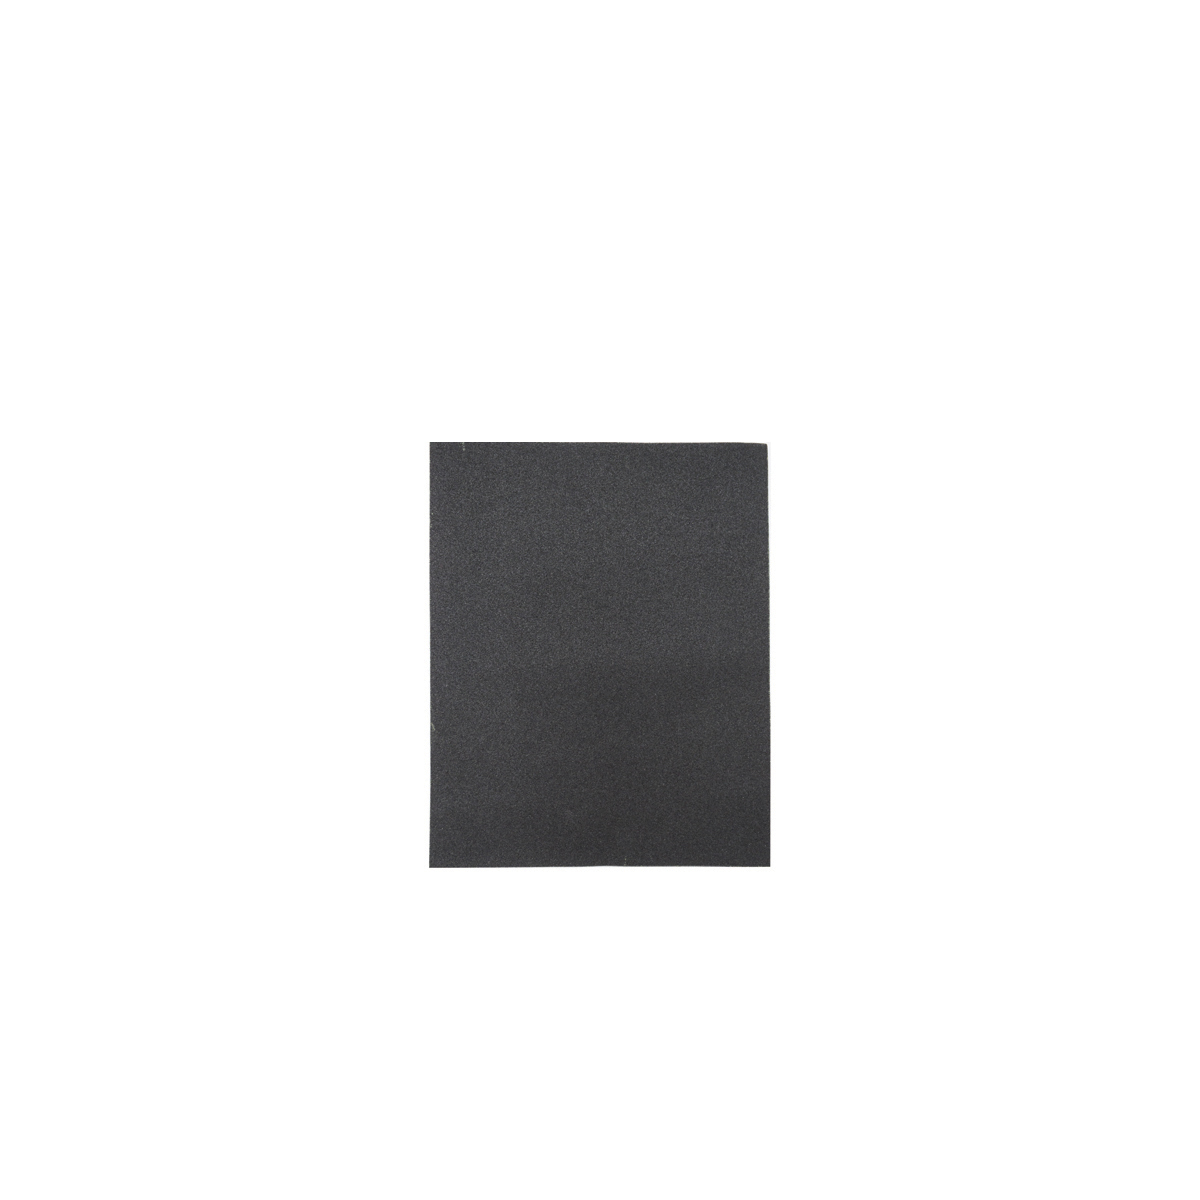 Лист шлифовальный Кедр, P 1500, 230 x 280 мм, водостойкий,   бумага, 10 шт водостойкий шлифовальный лист ремоколор